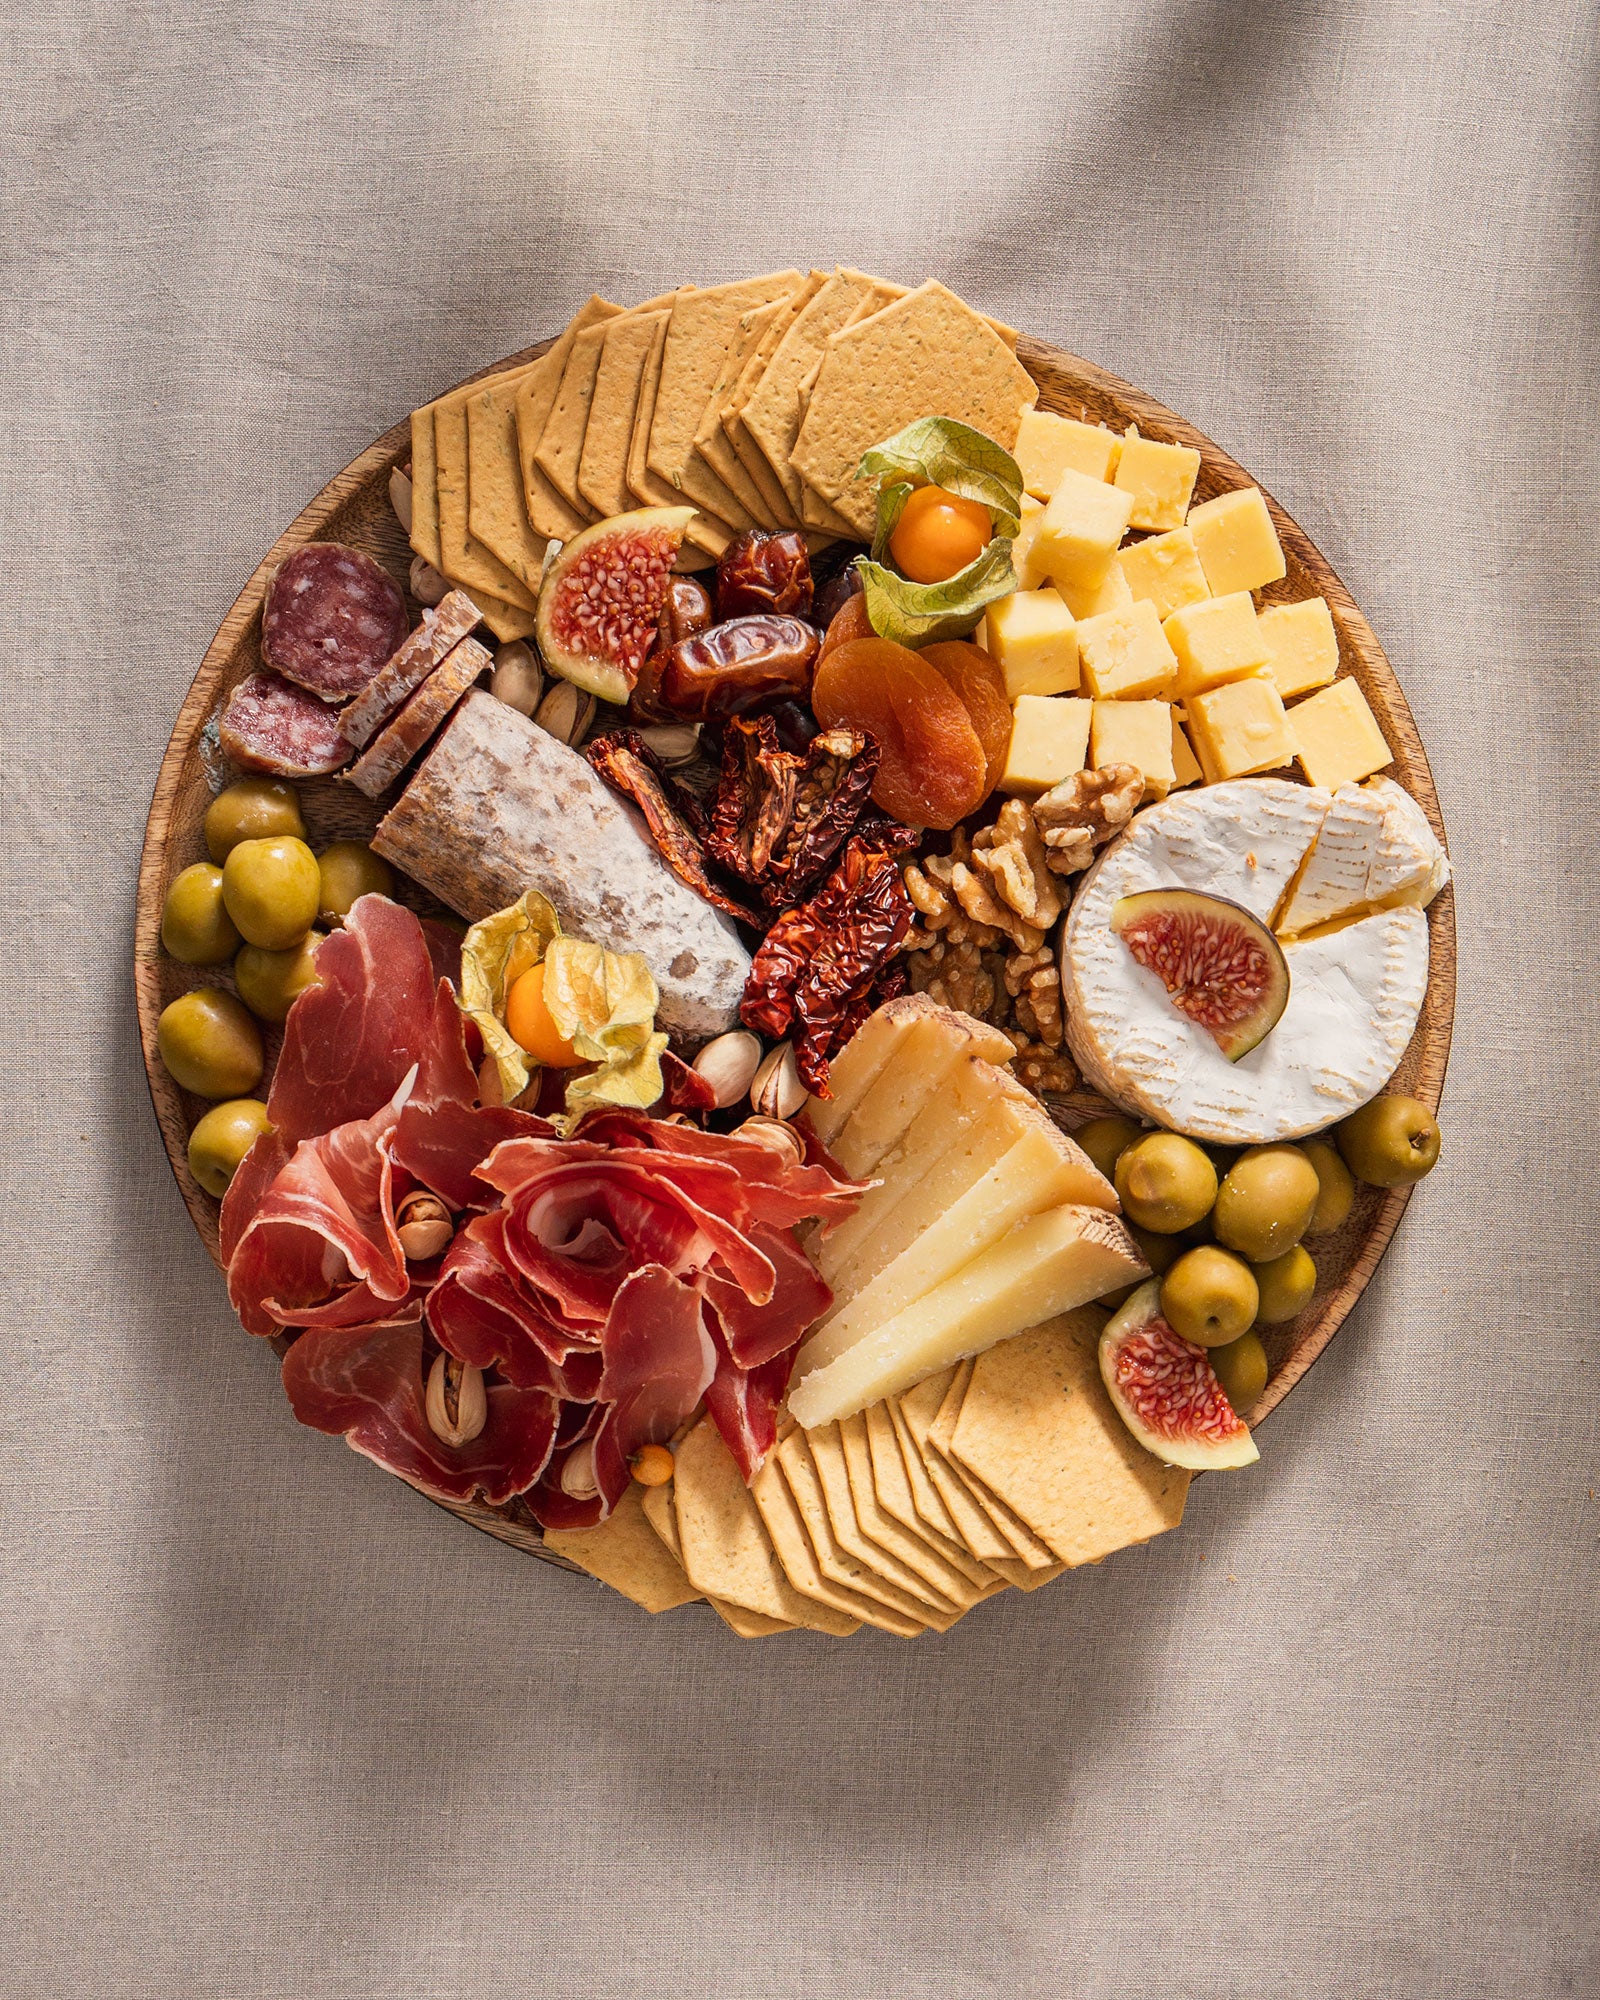 runde Grazing Platte mit Wurst, Käse, getrockneten Früchten, Oliven, Crackern